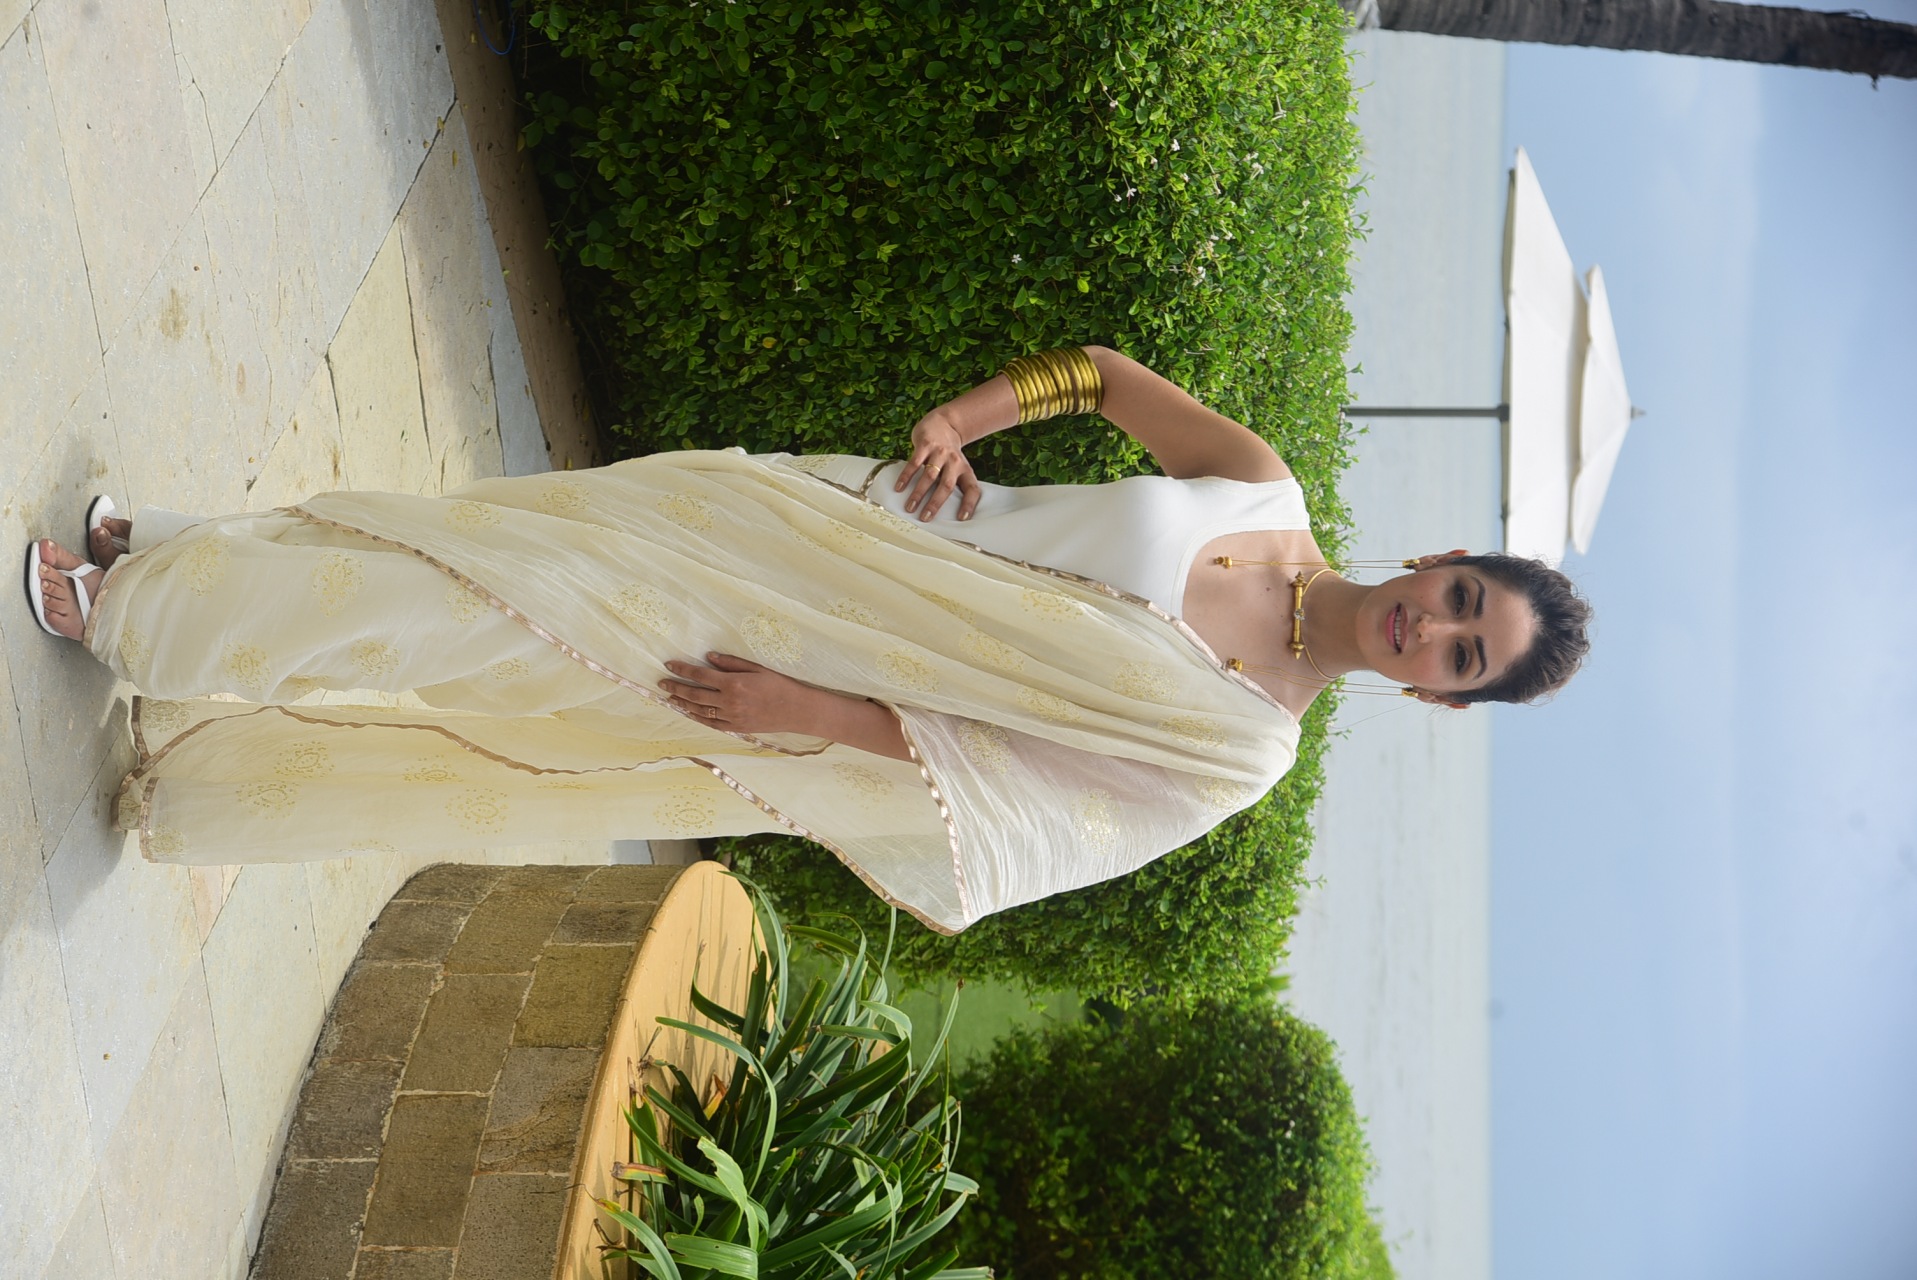 Yami Gautam looks elegant in the off-white saree. 